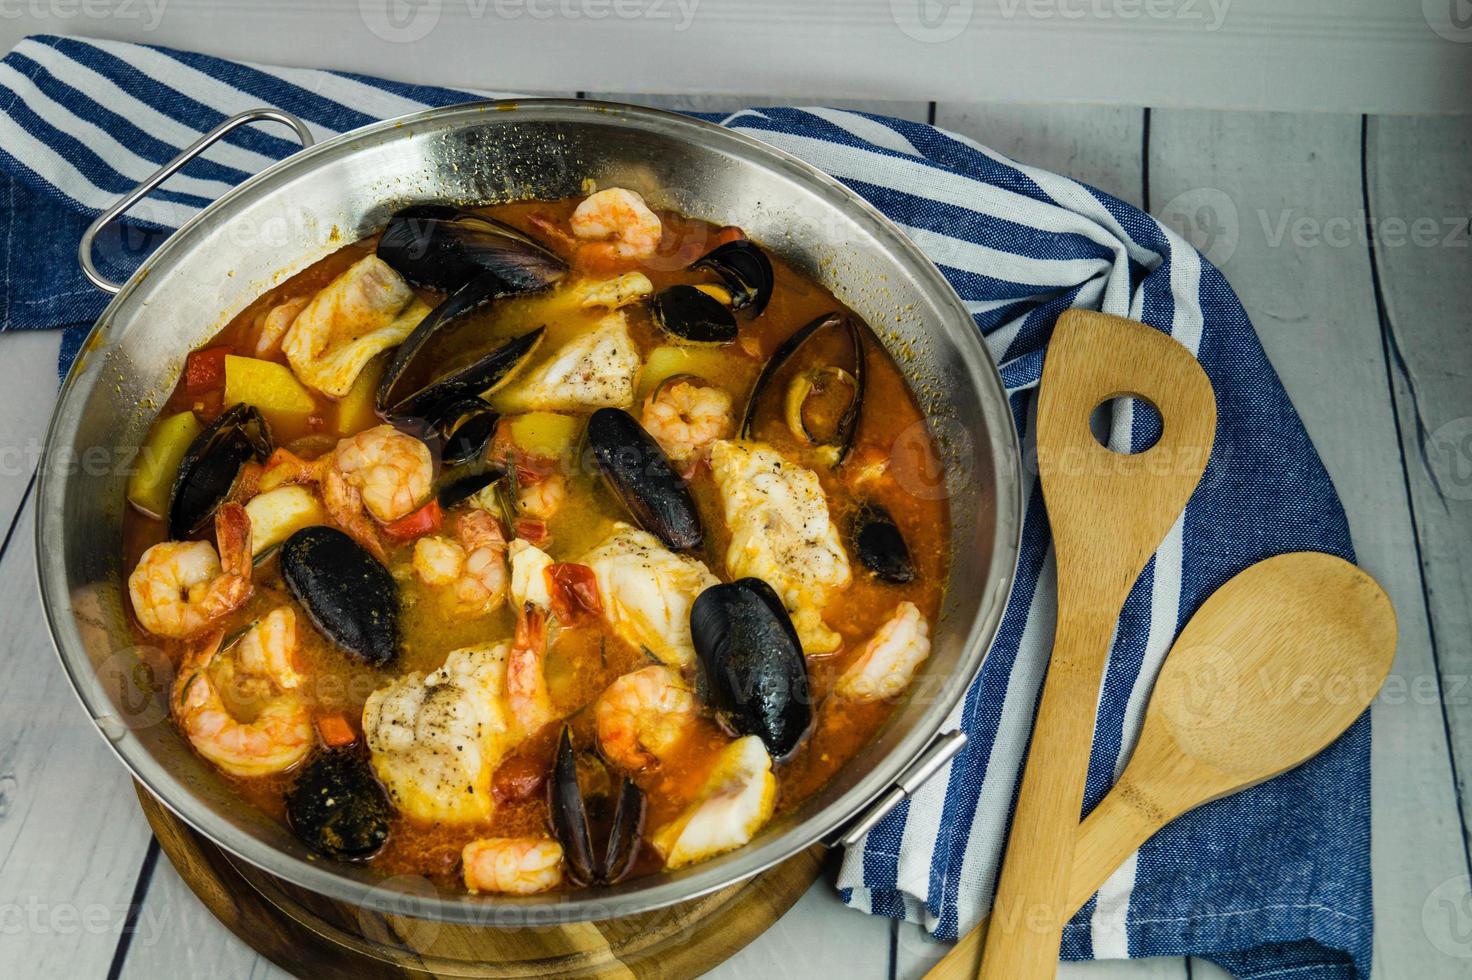 ingrédients pour une cataplana portugaise de fruits de mer photo